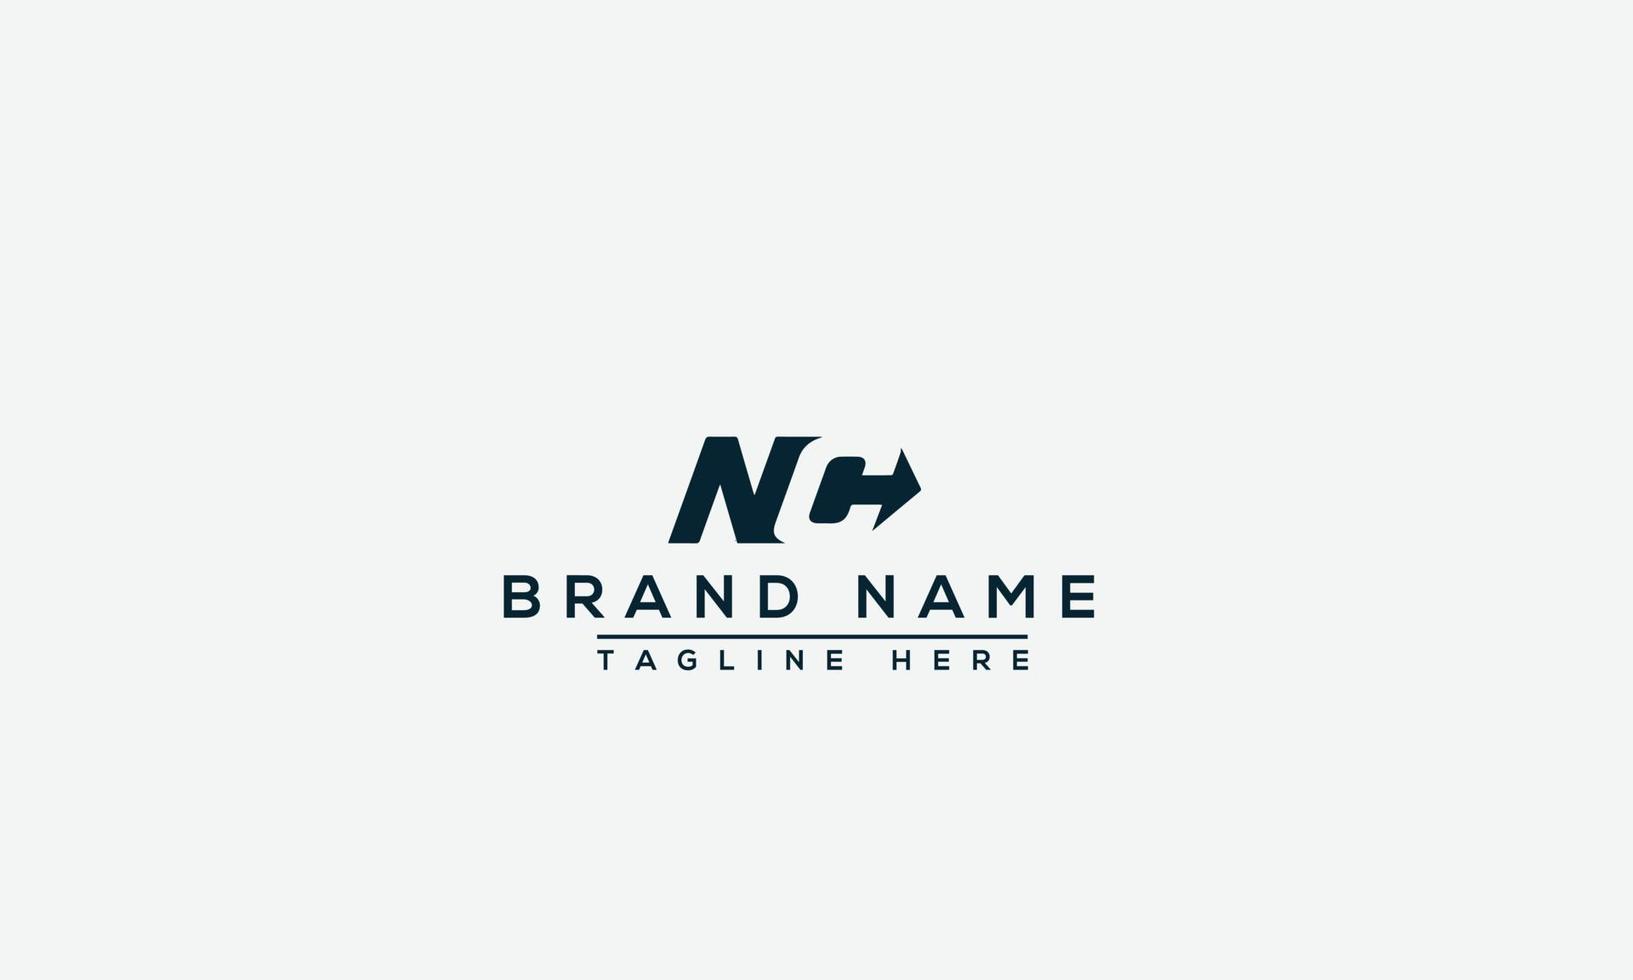 elemento de marca gráfico vectorial de plantilla de diseño de logotipo nc. vector